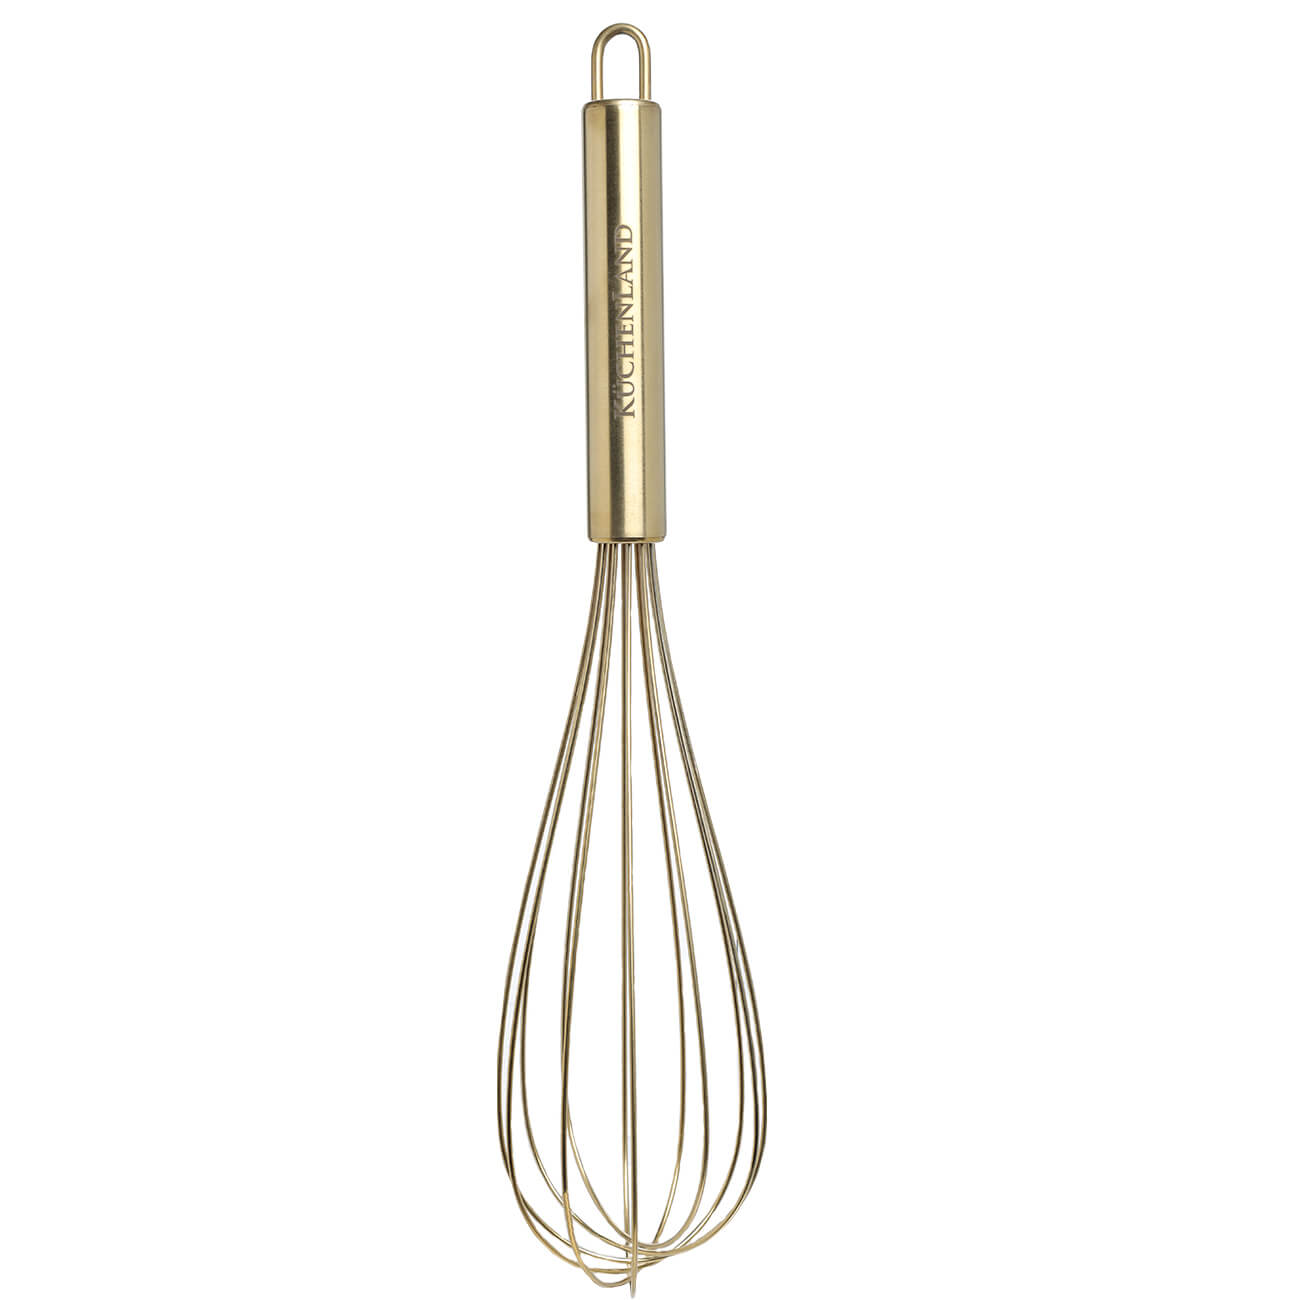 Whisk, 30 cm, steel, golden, Device gold изображение № 1